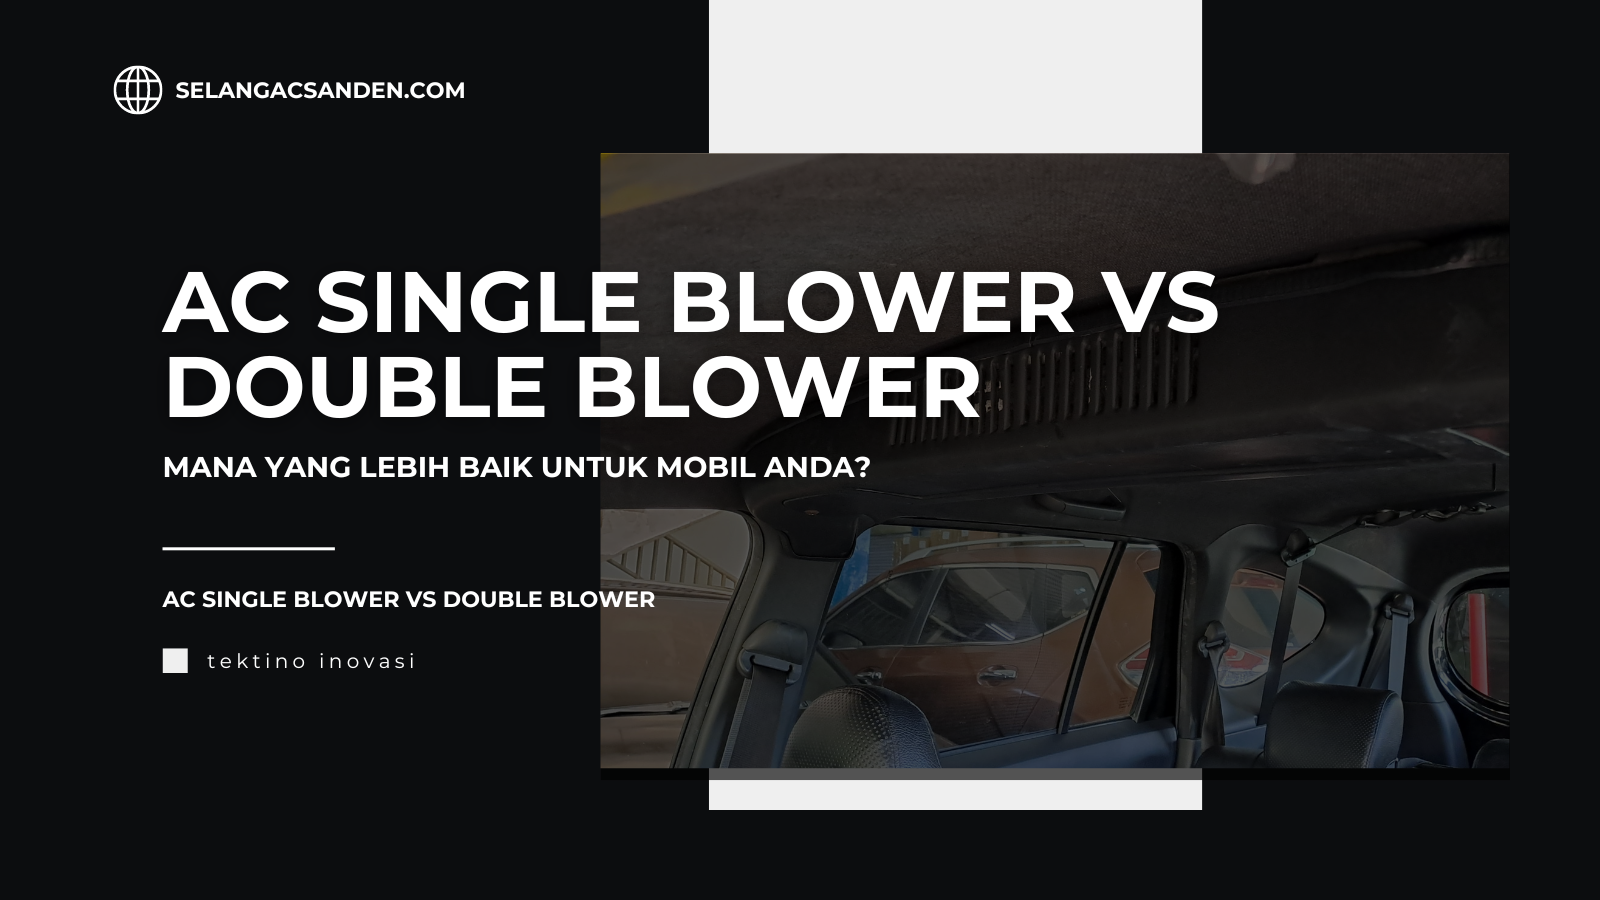 ac single blower vs double blower